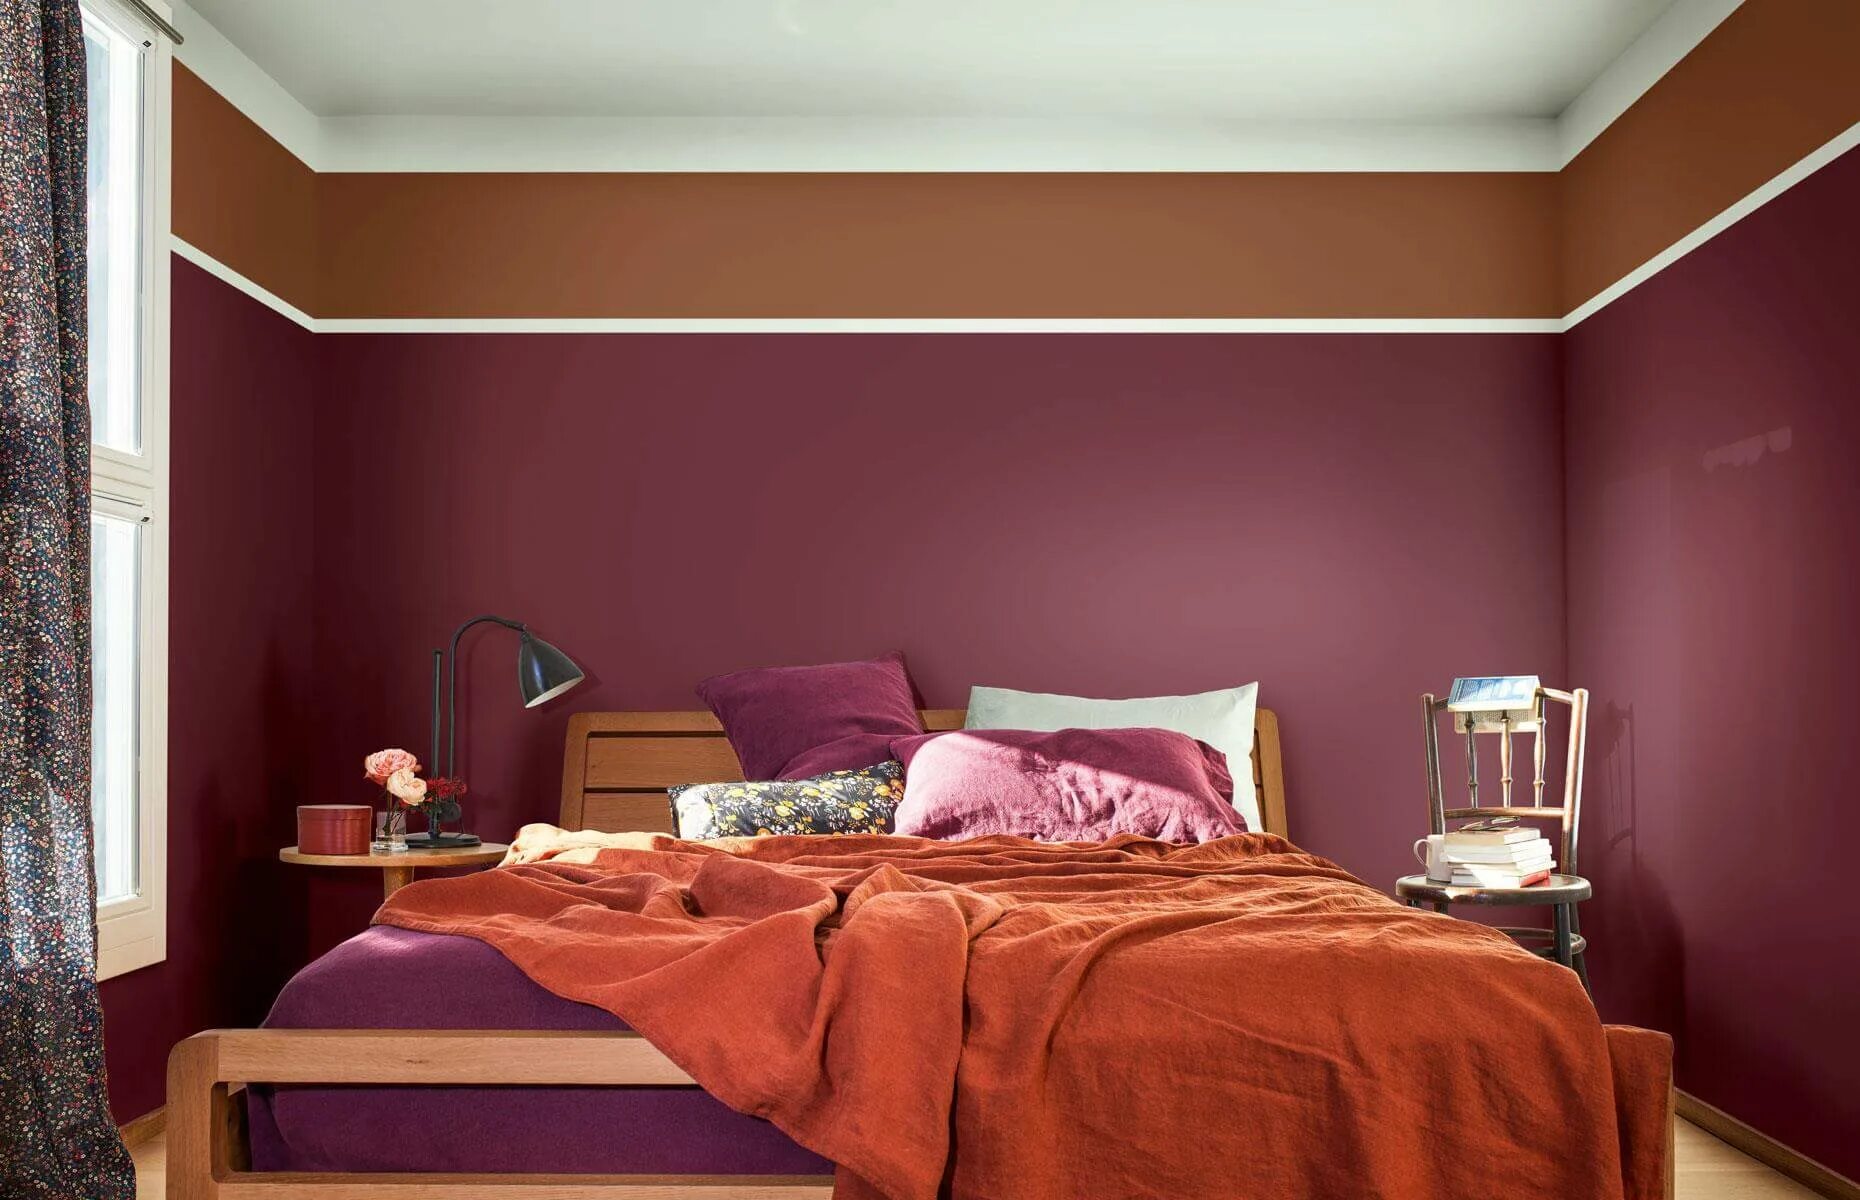 Популярные цвета стен. Бордовый цвет стен. Красивый цвет стен. Свекольный цвет в интерьере. Бордовый в интерьере спальни.